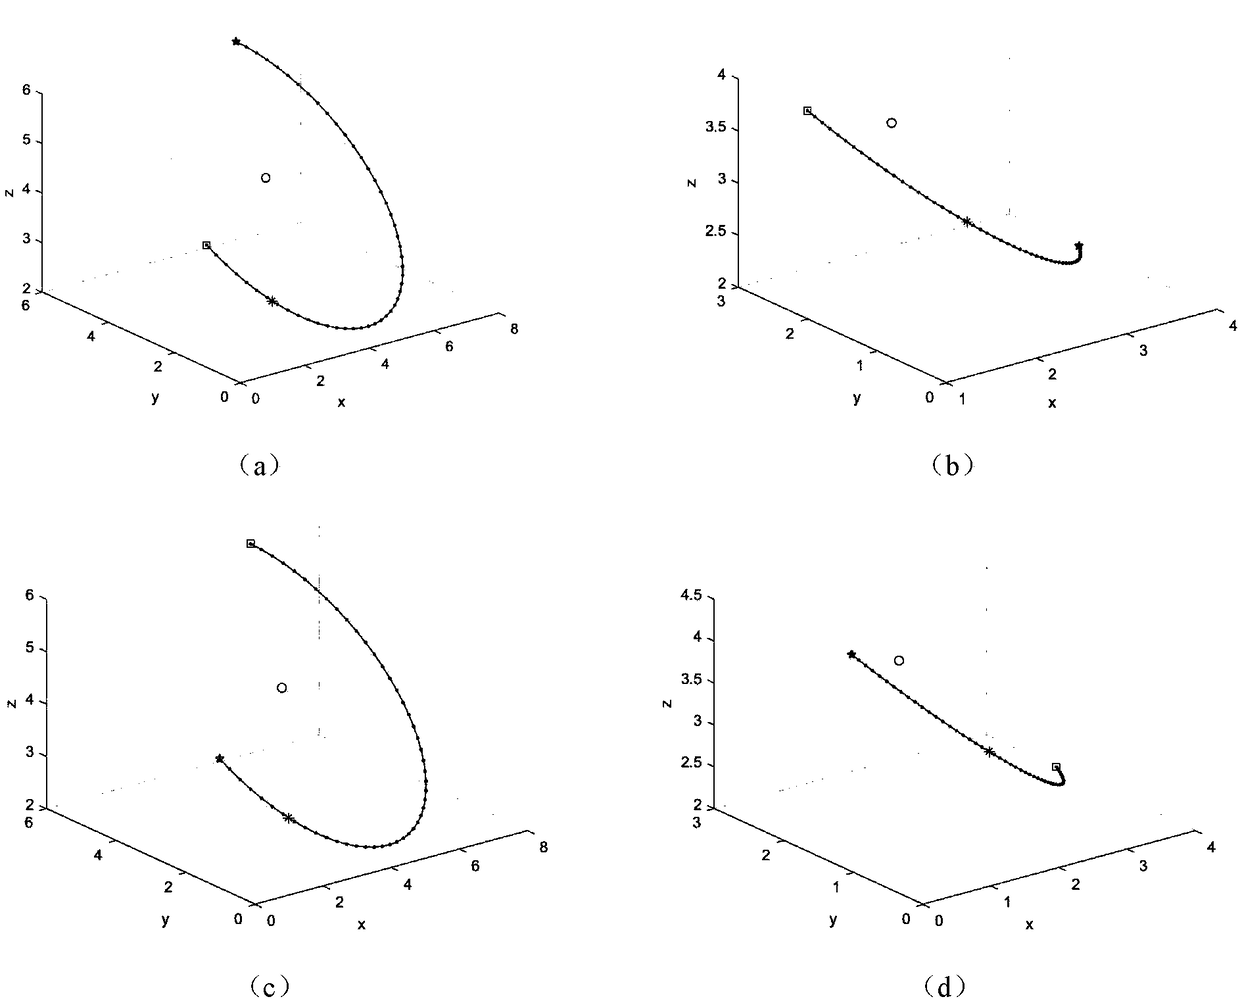 Space circular arc interpolation method of triaxial cartesian robot